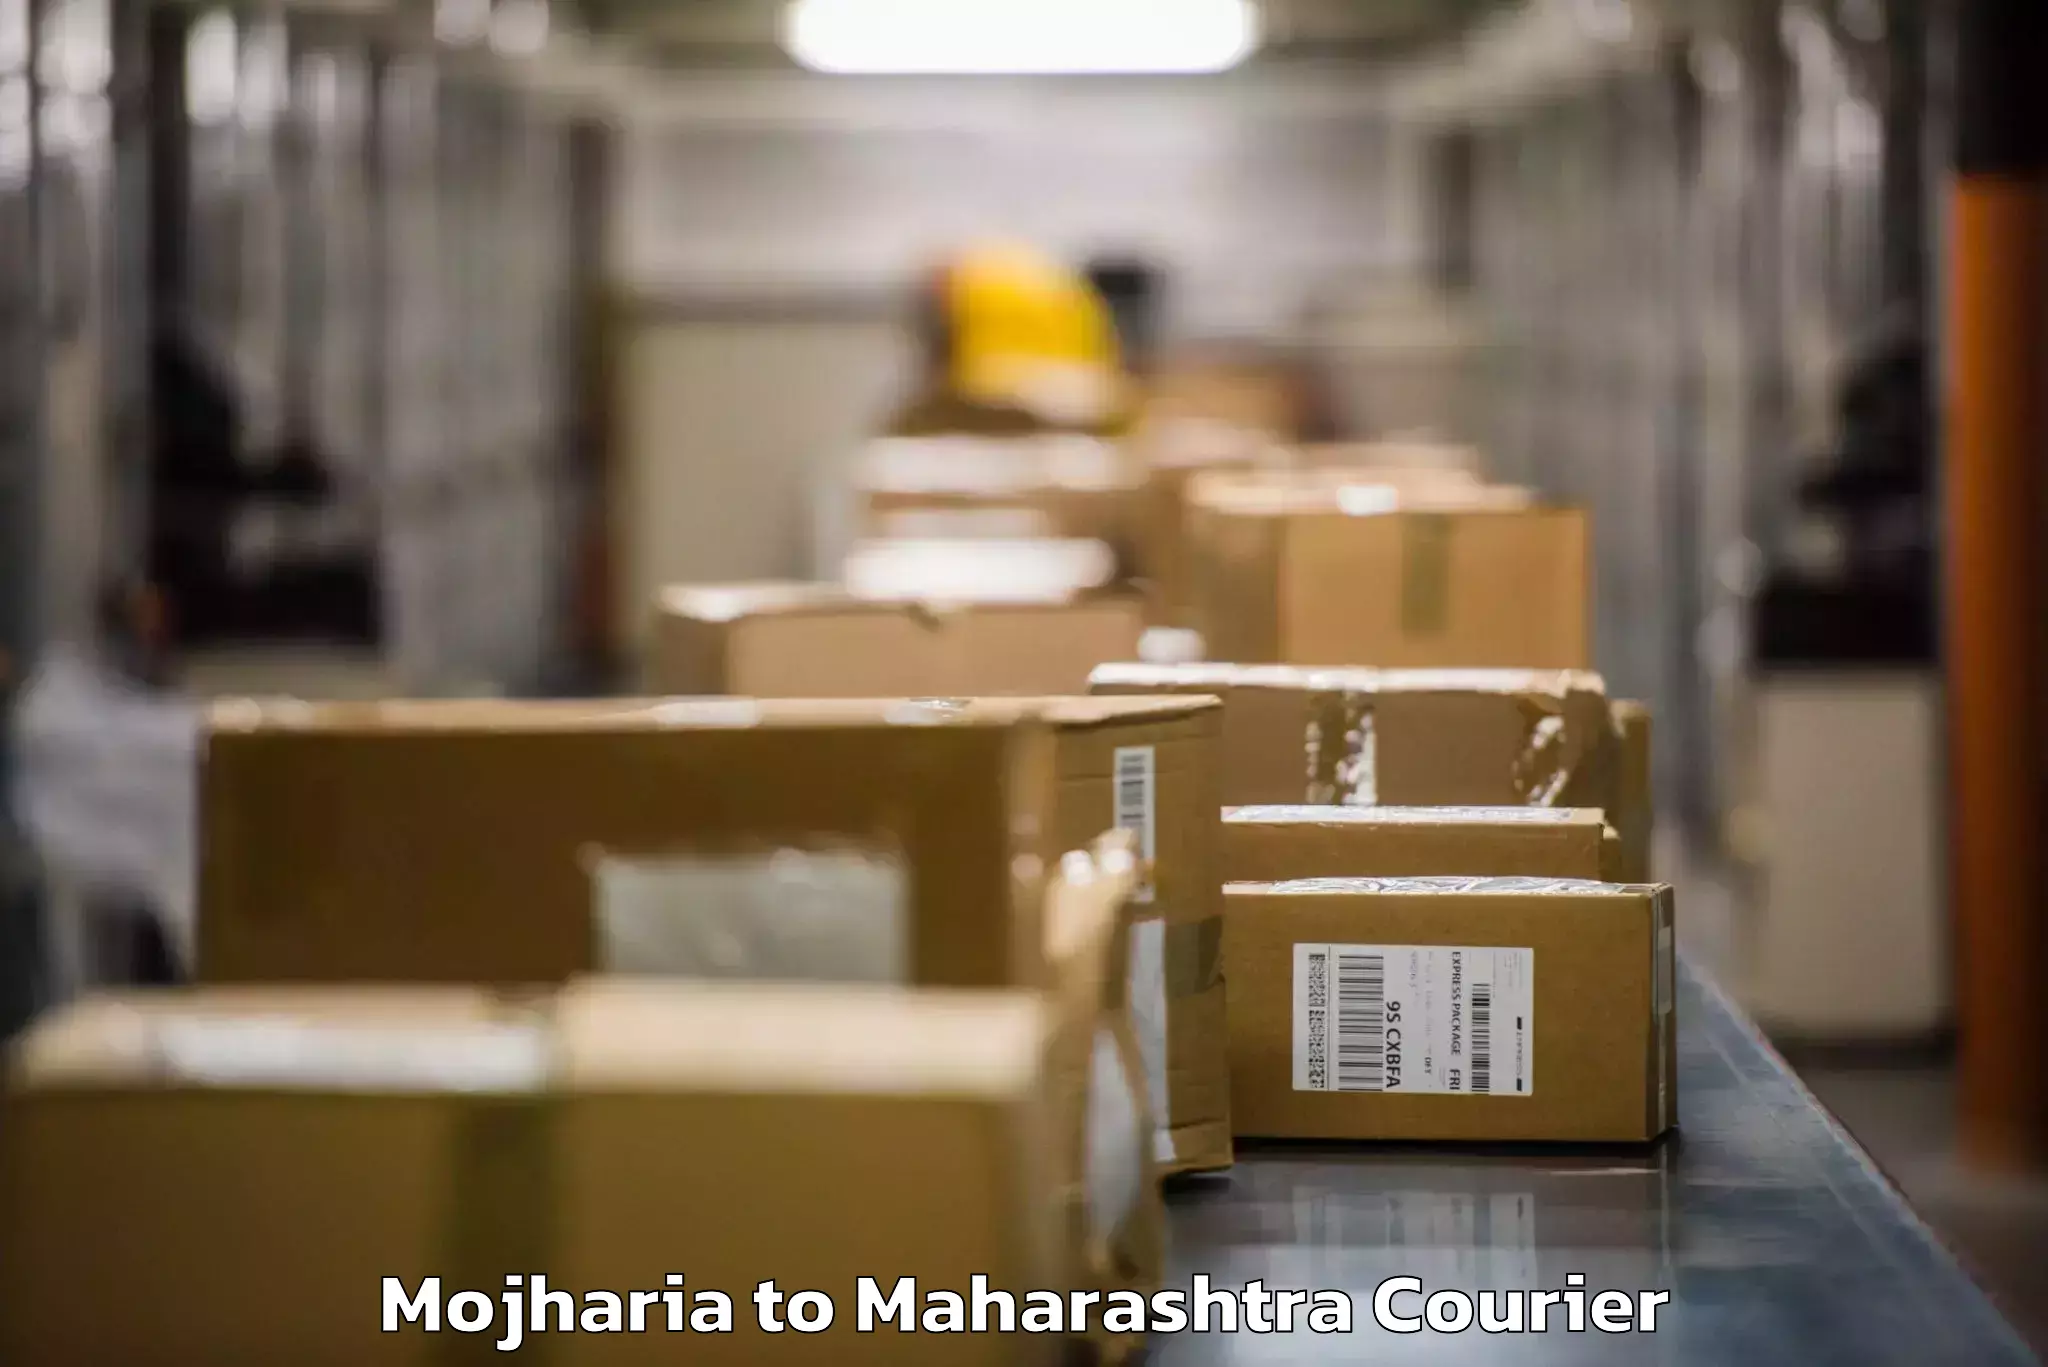 Luggage dispatch service Mojharia to Mumbai Port